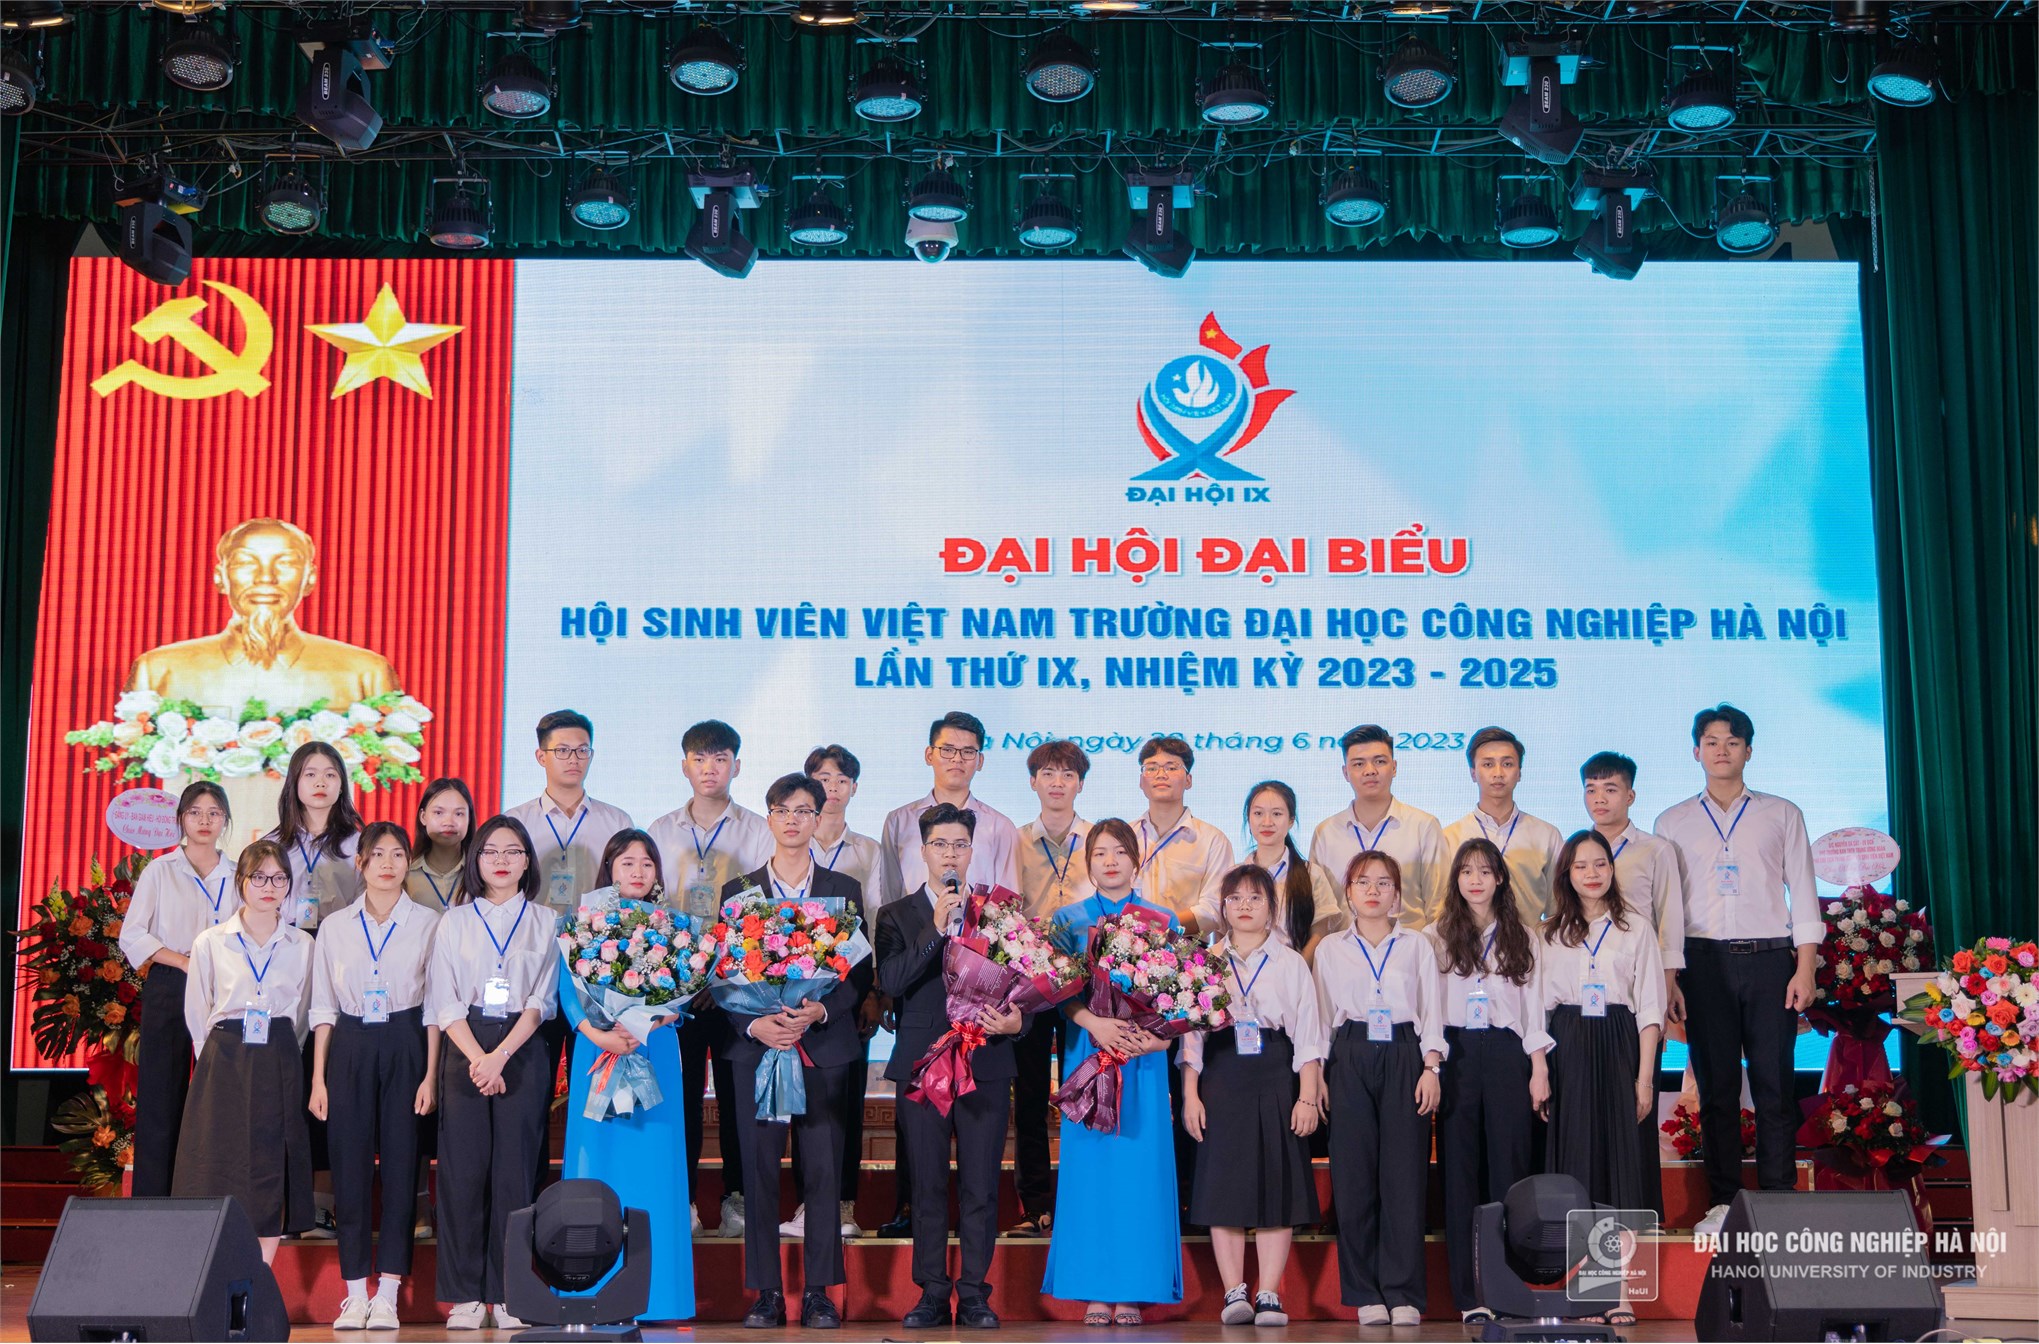 Đại hội Đại biểu Hội Sinh viên Việt Nam Trường Đại học Công nghiệp Hà Nội lần thứ IX, nhiệm kỳ 2023 – 2025